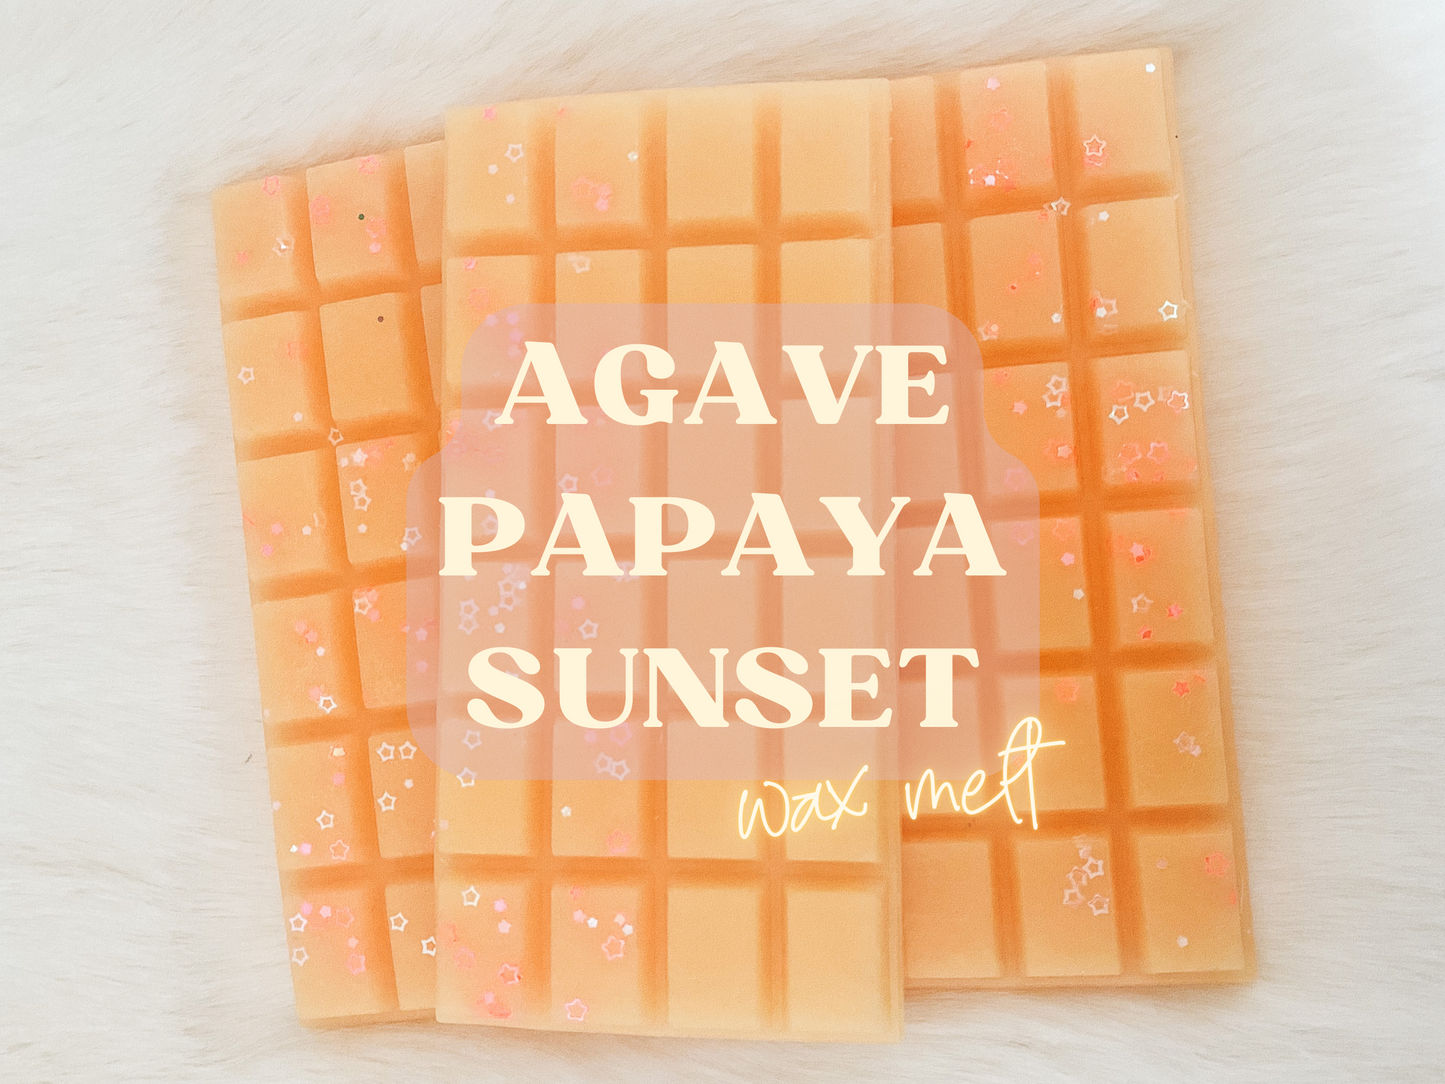 Agave Papaya Sunset Snap Bar